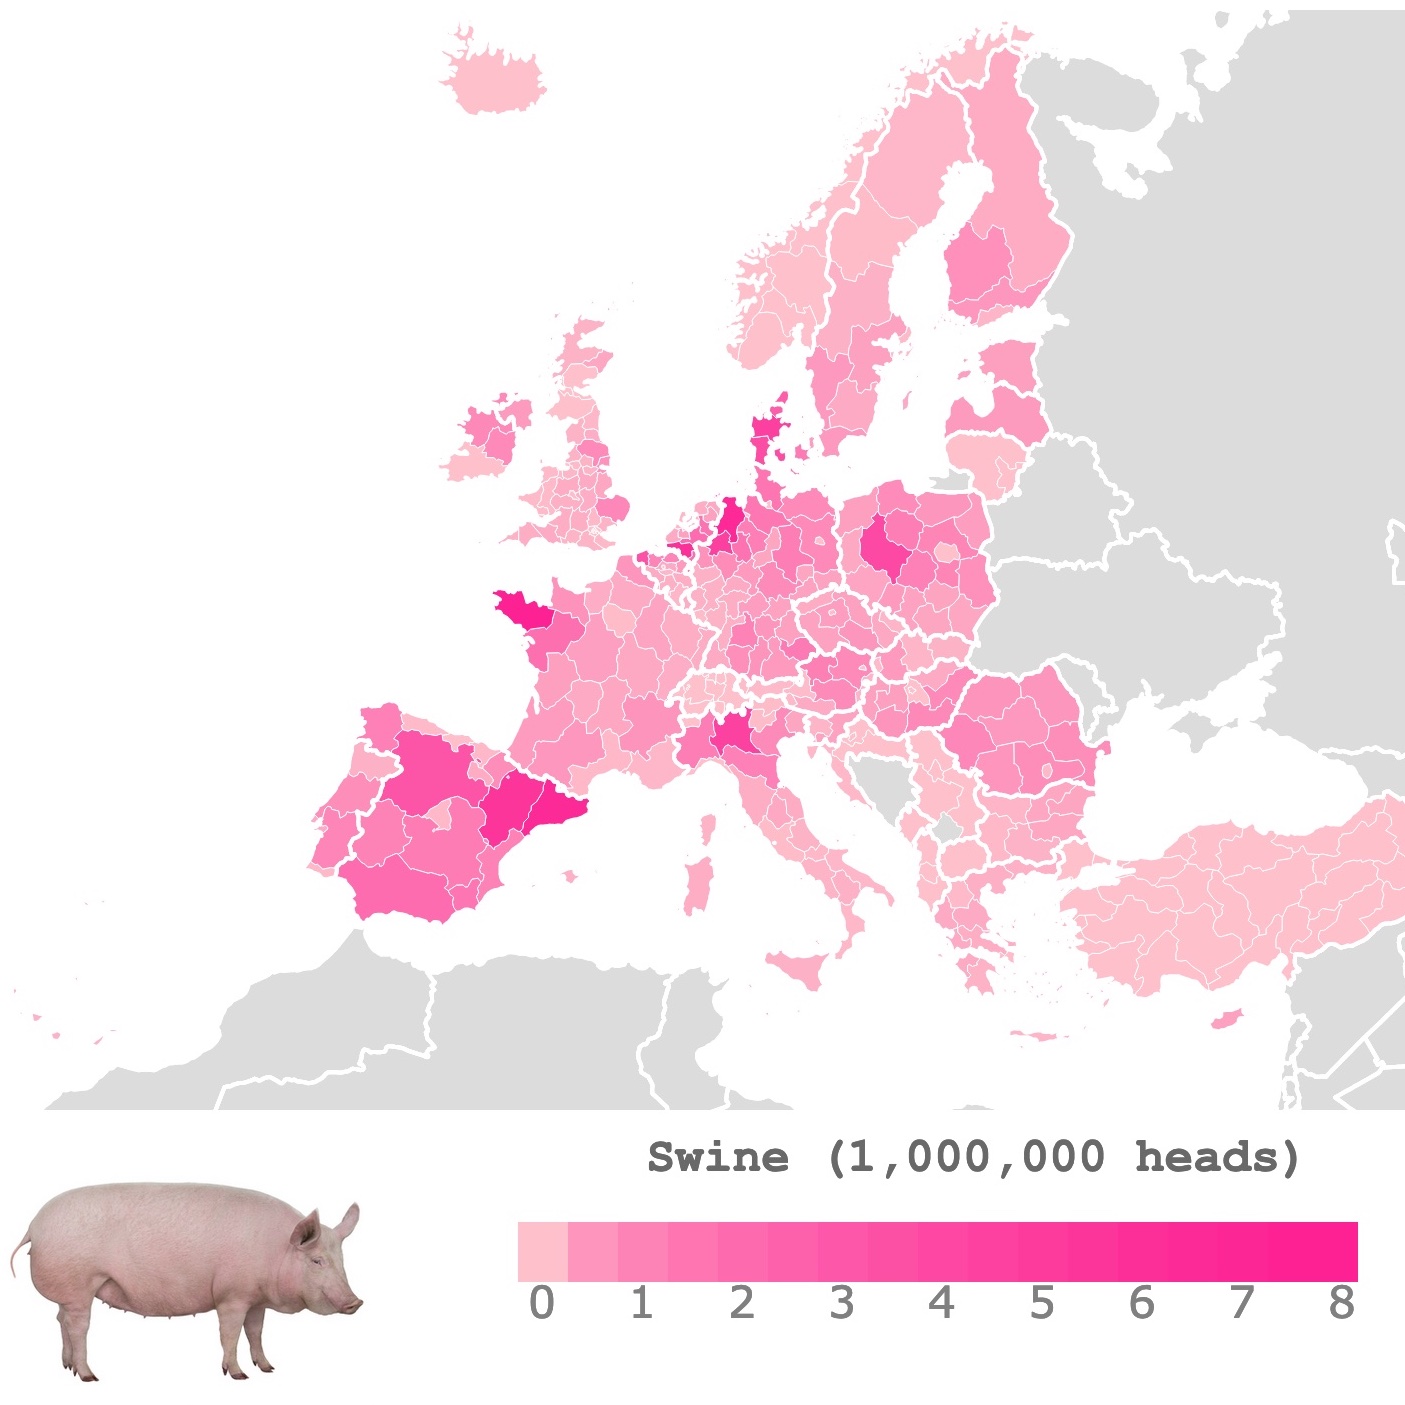 Map of Pig Density in Europe